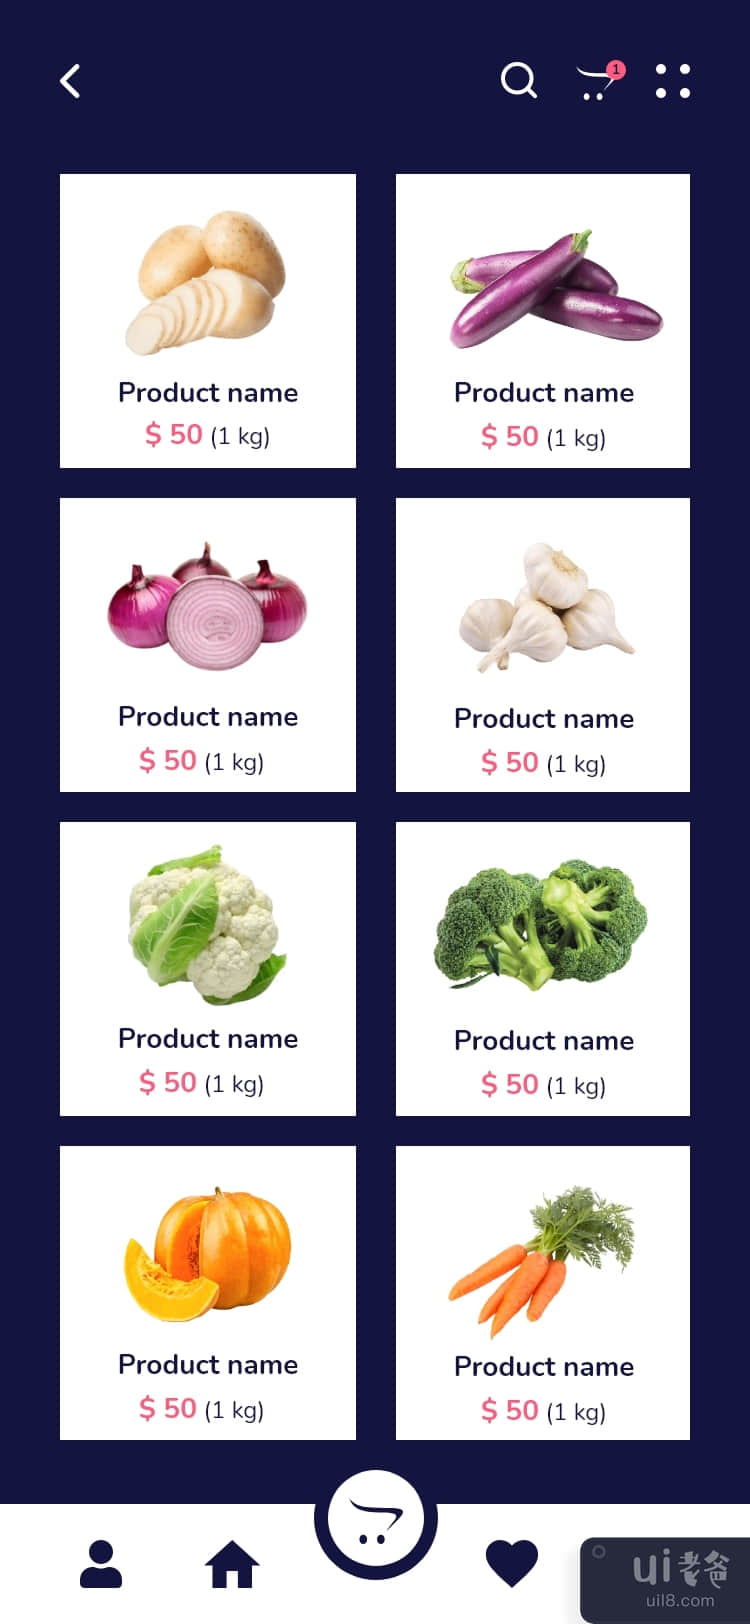 免费下载在线杂货购物应用程序 UI 工具包模板设计(Free Download Online Grocery Shopping App UI Kit Template Design)插图3